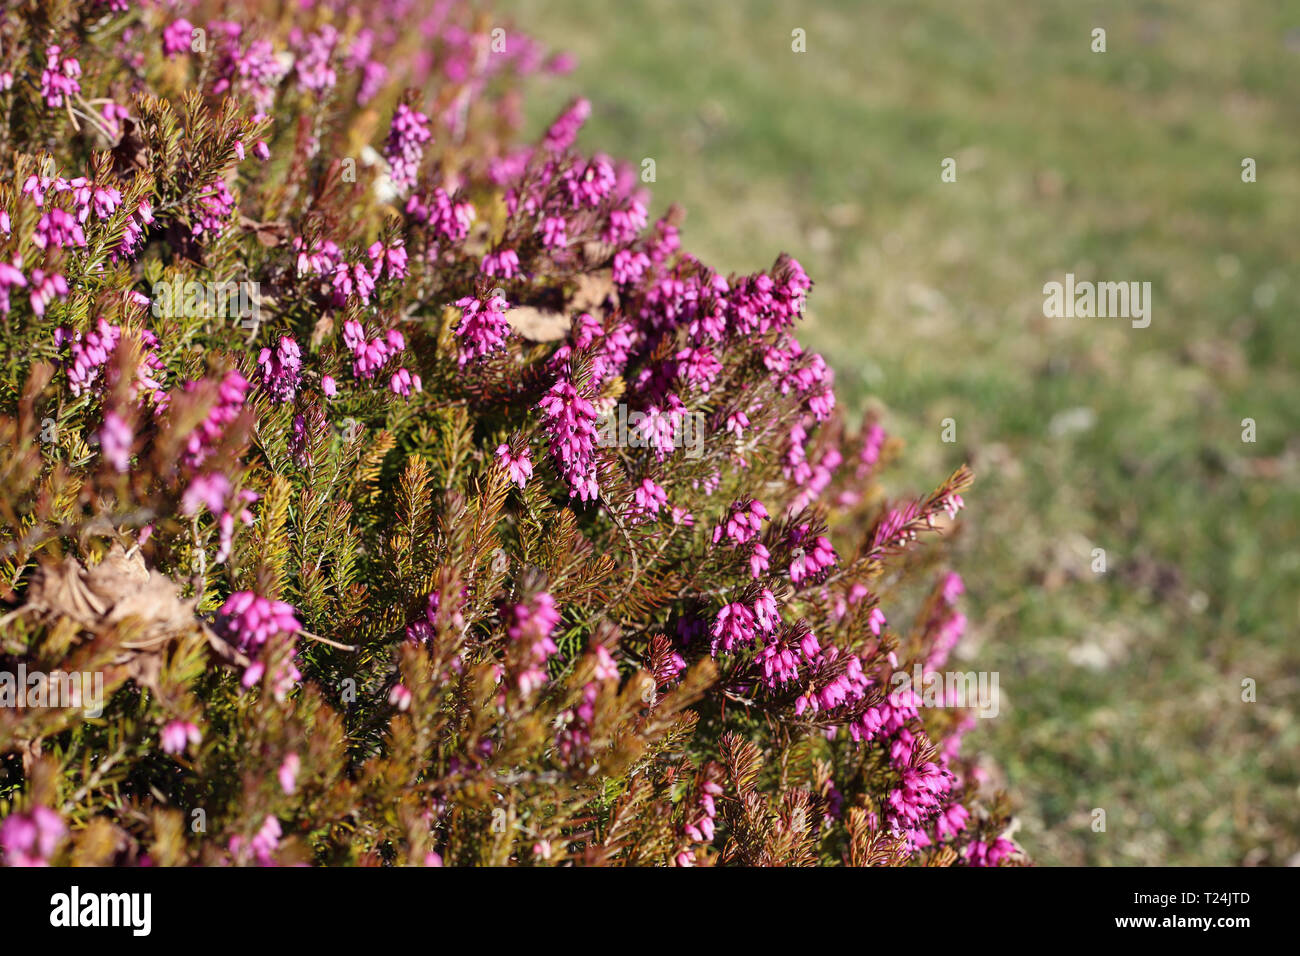 Violett-rosa Lavendel Blumen in Nyon, Schweiz, während ein sonniger  Frühlingstag fotografiert. Schöne Blumen mit tollen Farbe. Closeup Bild  Stockfotografie - Alamy